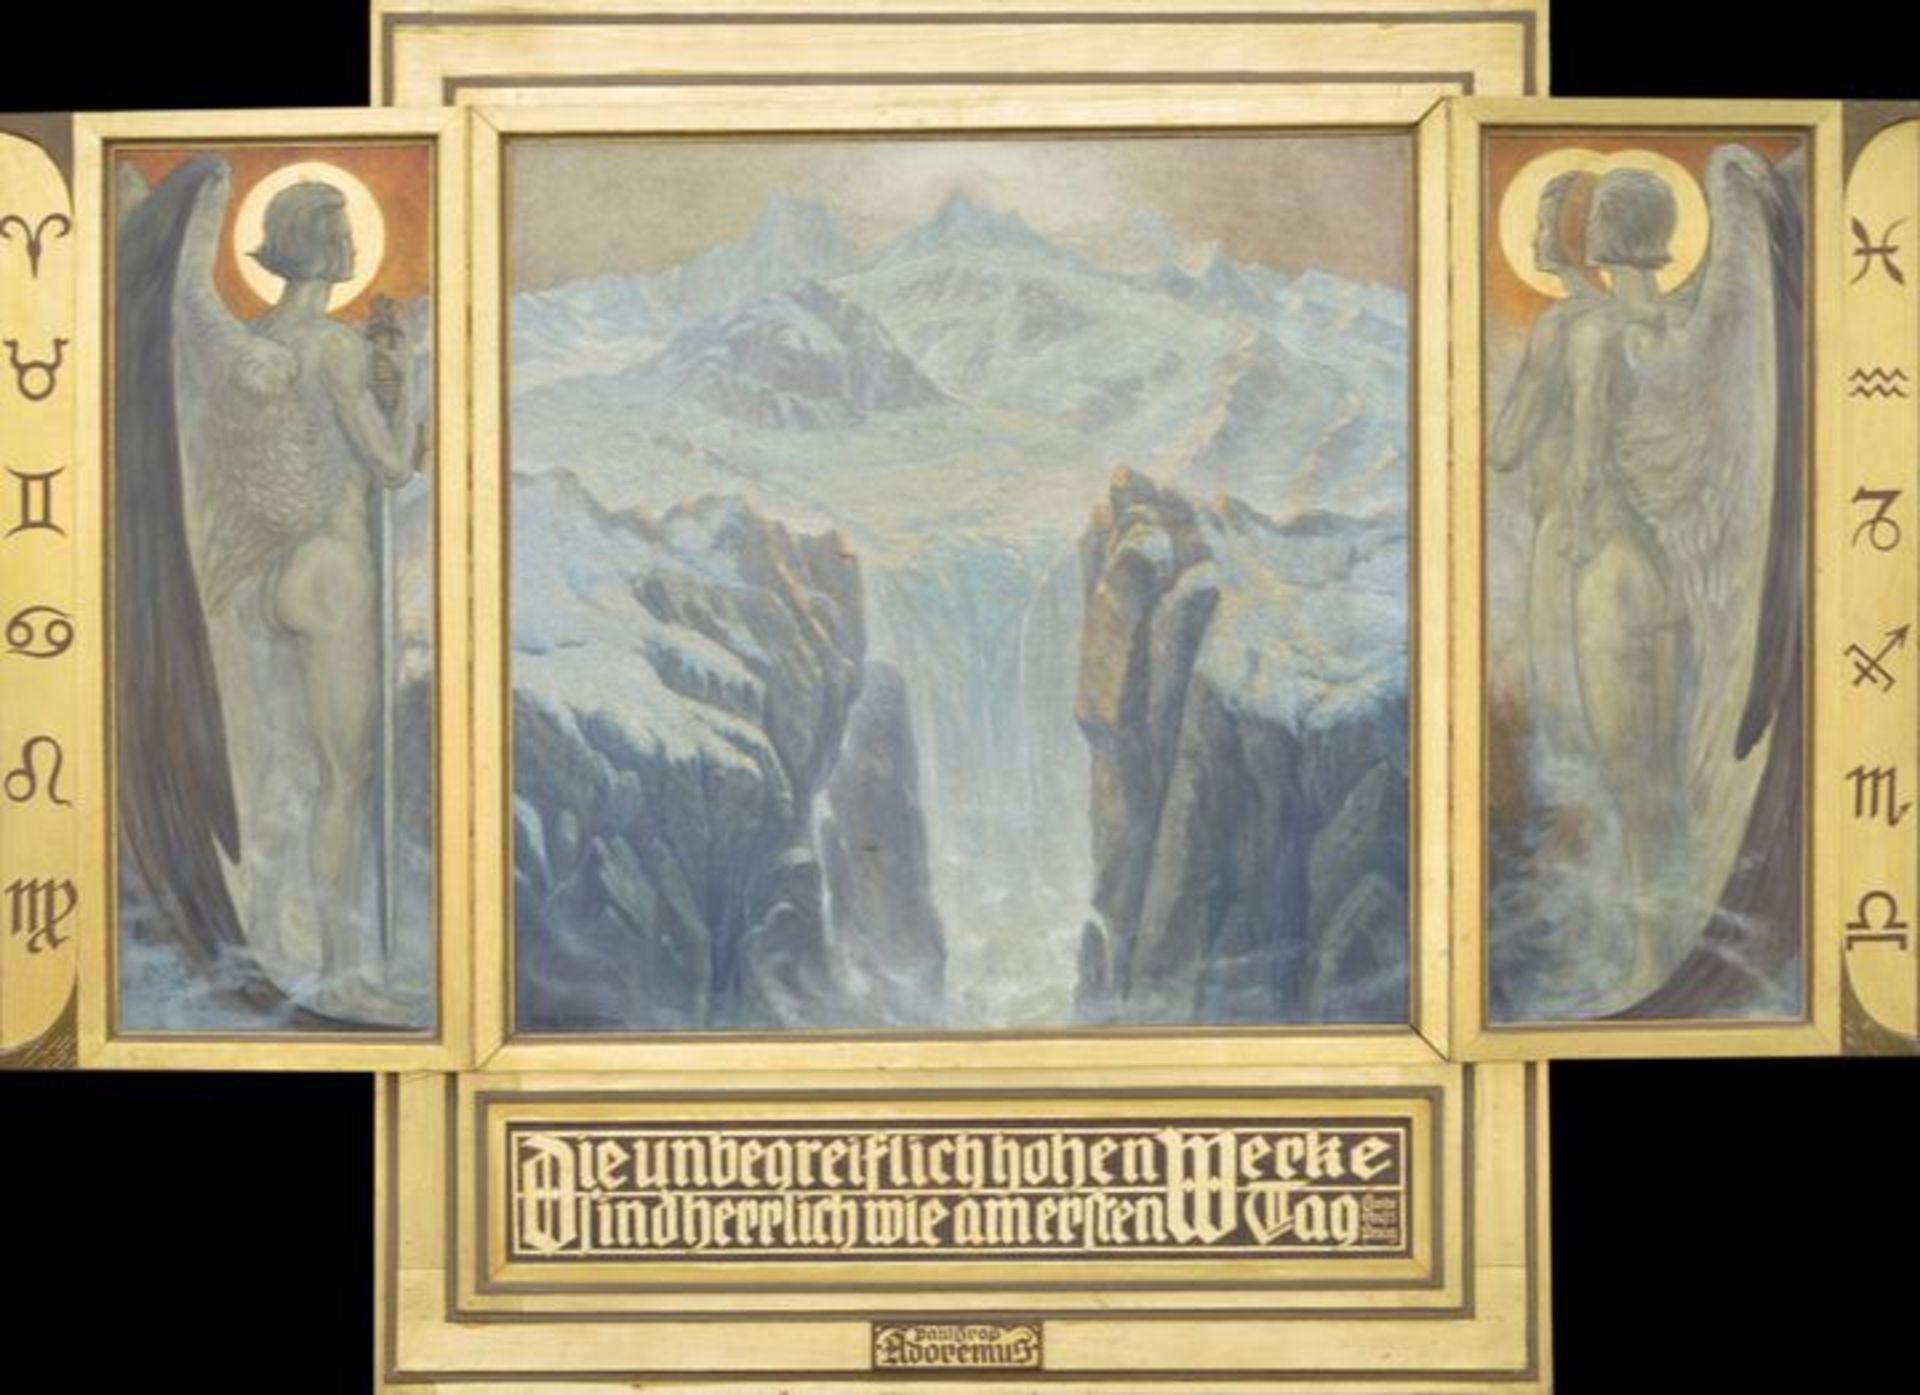 Groß, Paul. 1873-1942 DresdenFlügelaltar, 1935. Mitteltafel mit zwei Seitenflügeln im vergoldeten